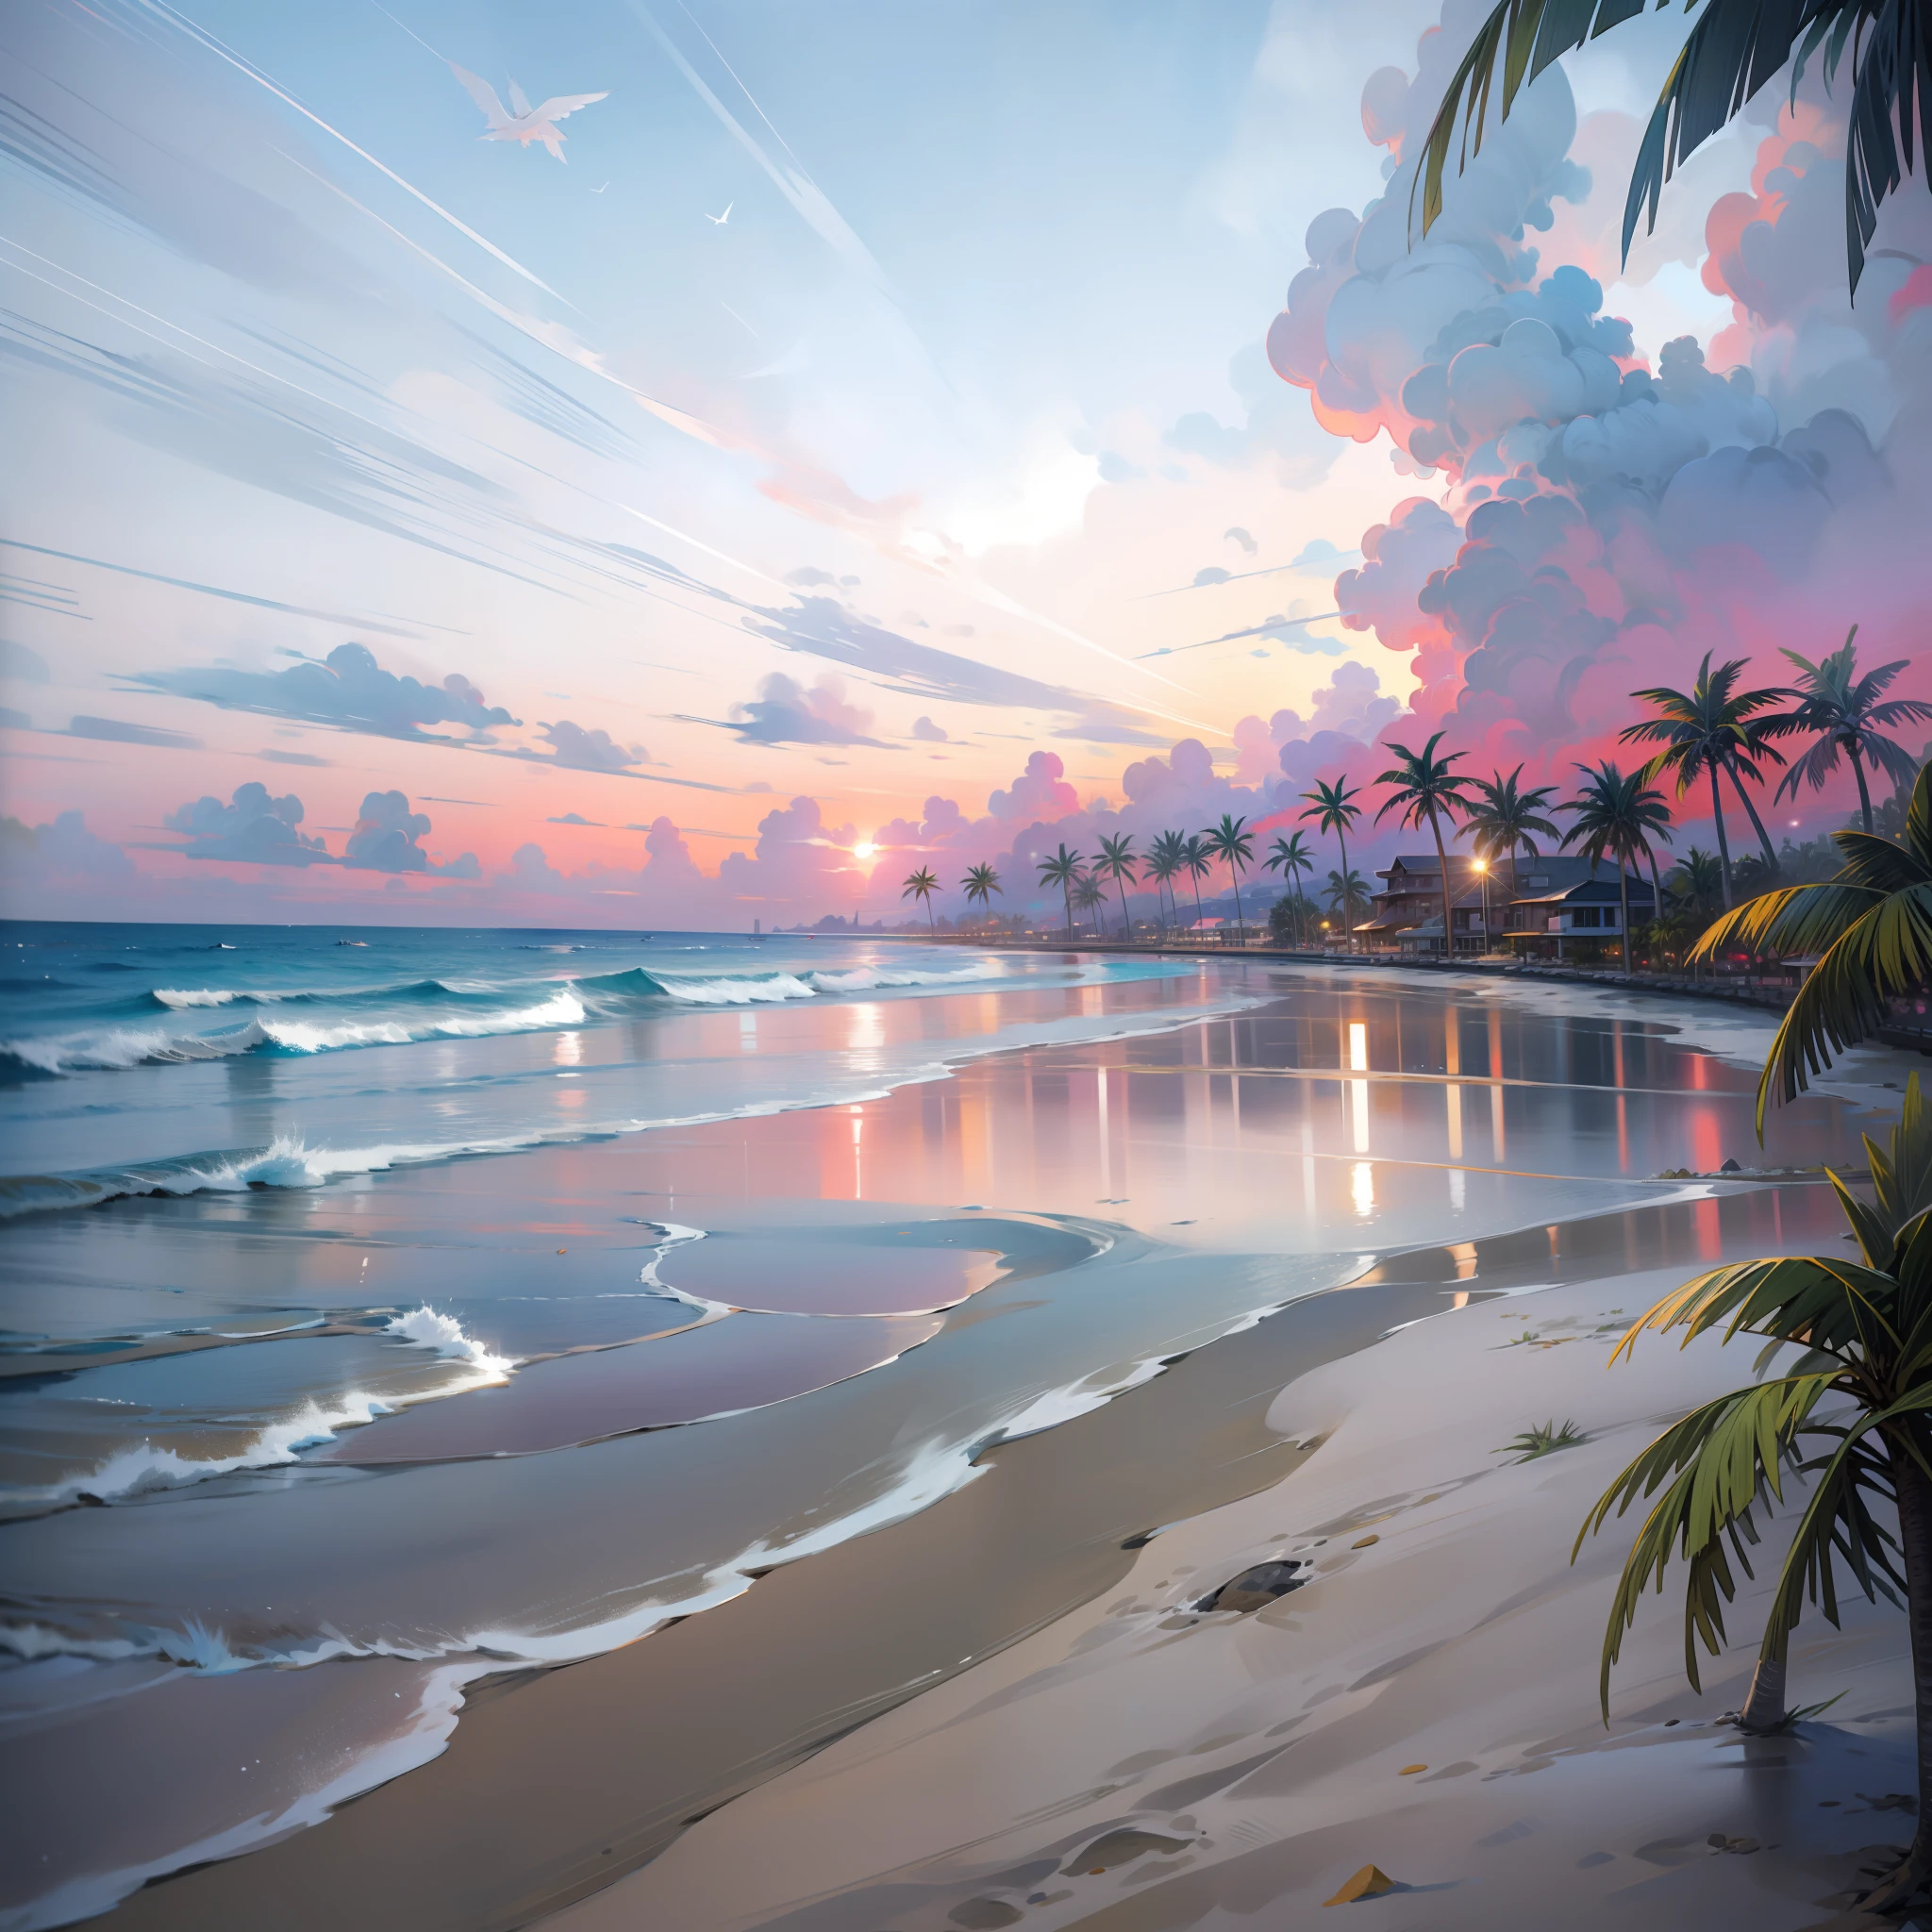 una puesta de sol absolutamente fascinante en la playa con una mezcla de naranja, rosa y amarillo en el cielo. El agua es cristalina., besando suavemente la orilla, y la playa de arena blanca se extiende hasta donde alcanza la vista. La escena es dinámica e impresionante., con gaviotas volando alto en el cielo y palmeras balanceándose suavemente. Empápate del ambiente tranquilo y deja que la tranquilidad te envuelva.